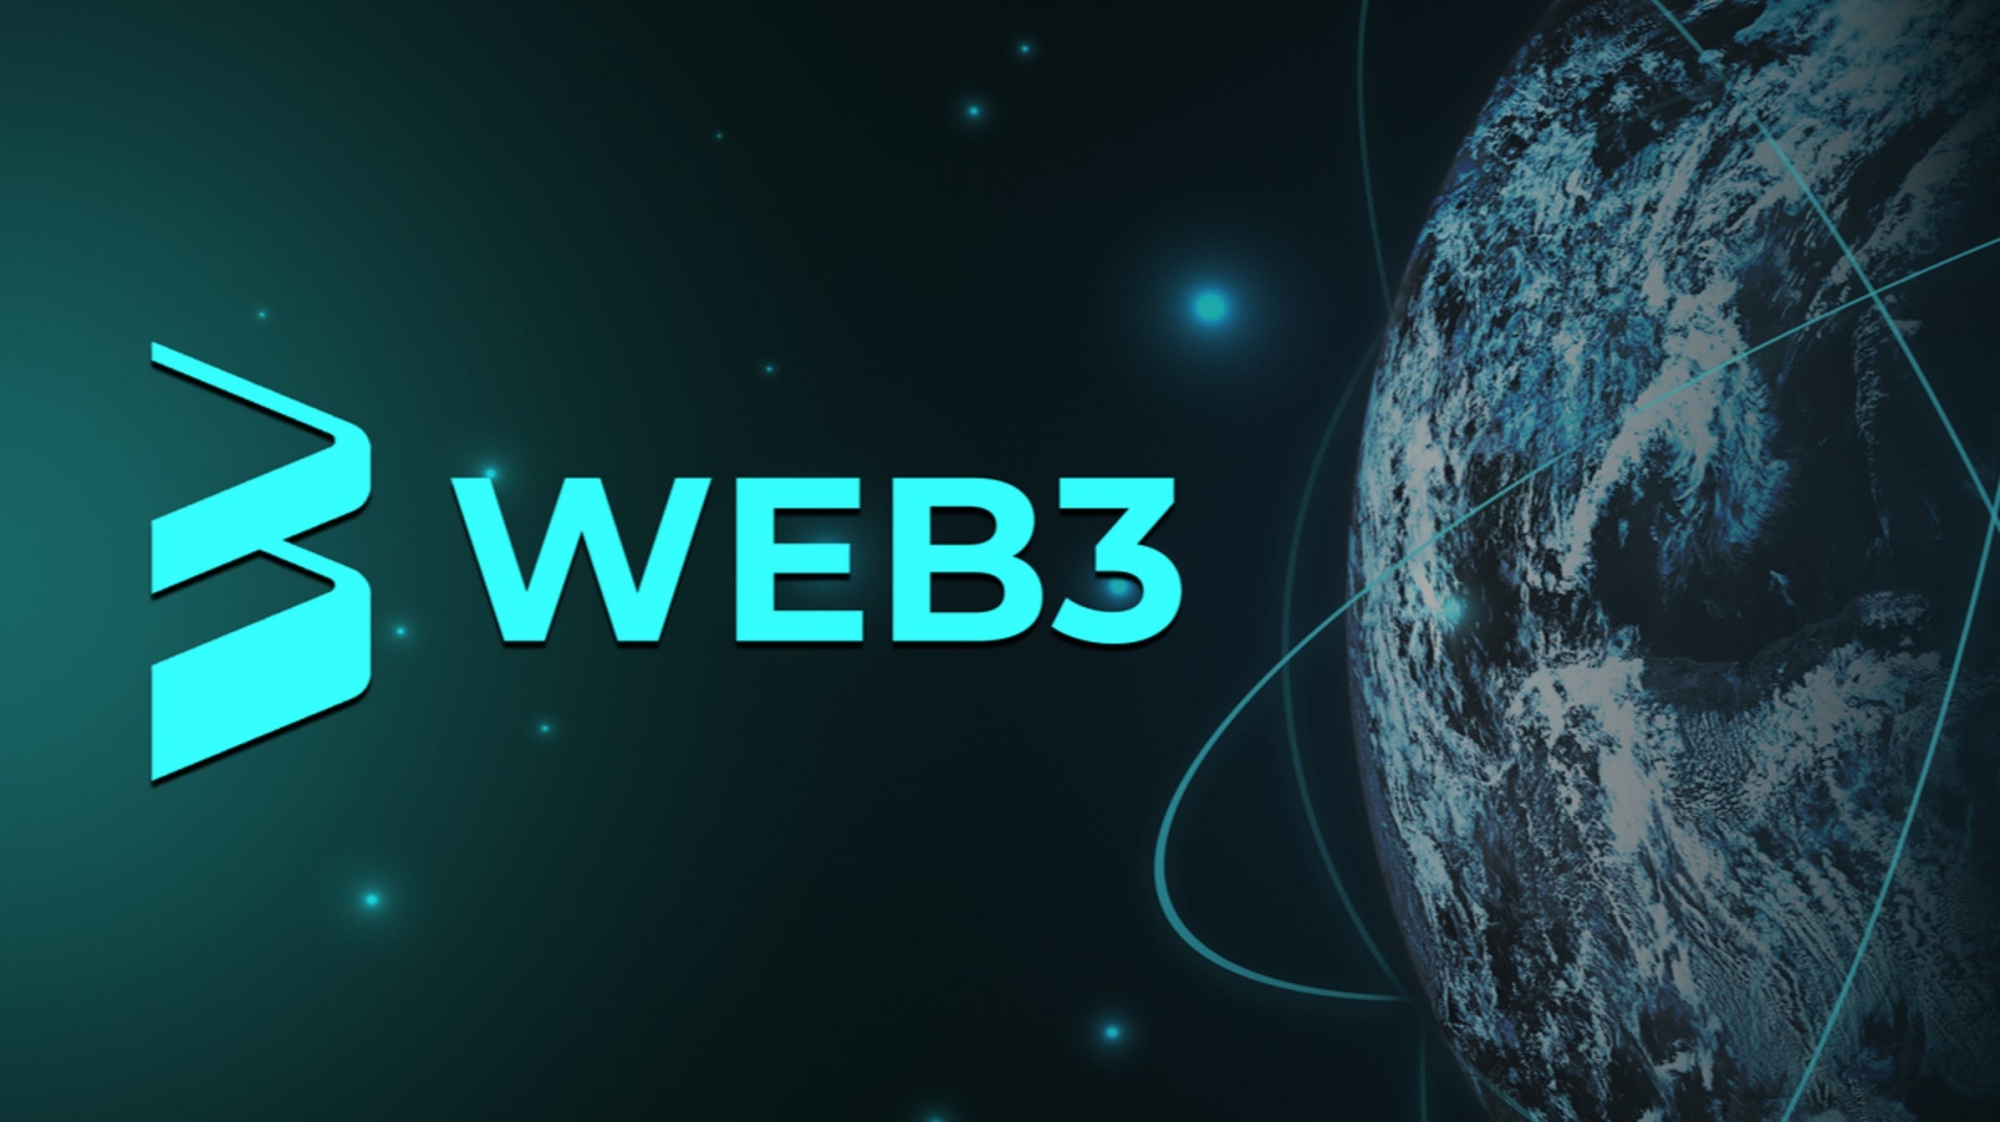 Chìa khóa thành công của Web3 là giảm thiểu sự phức tạp